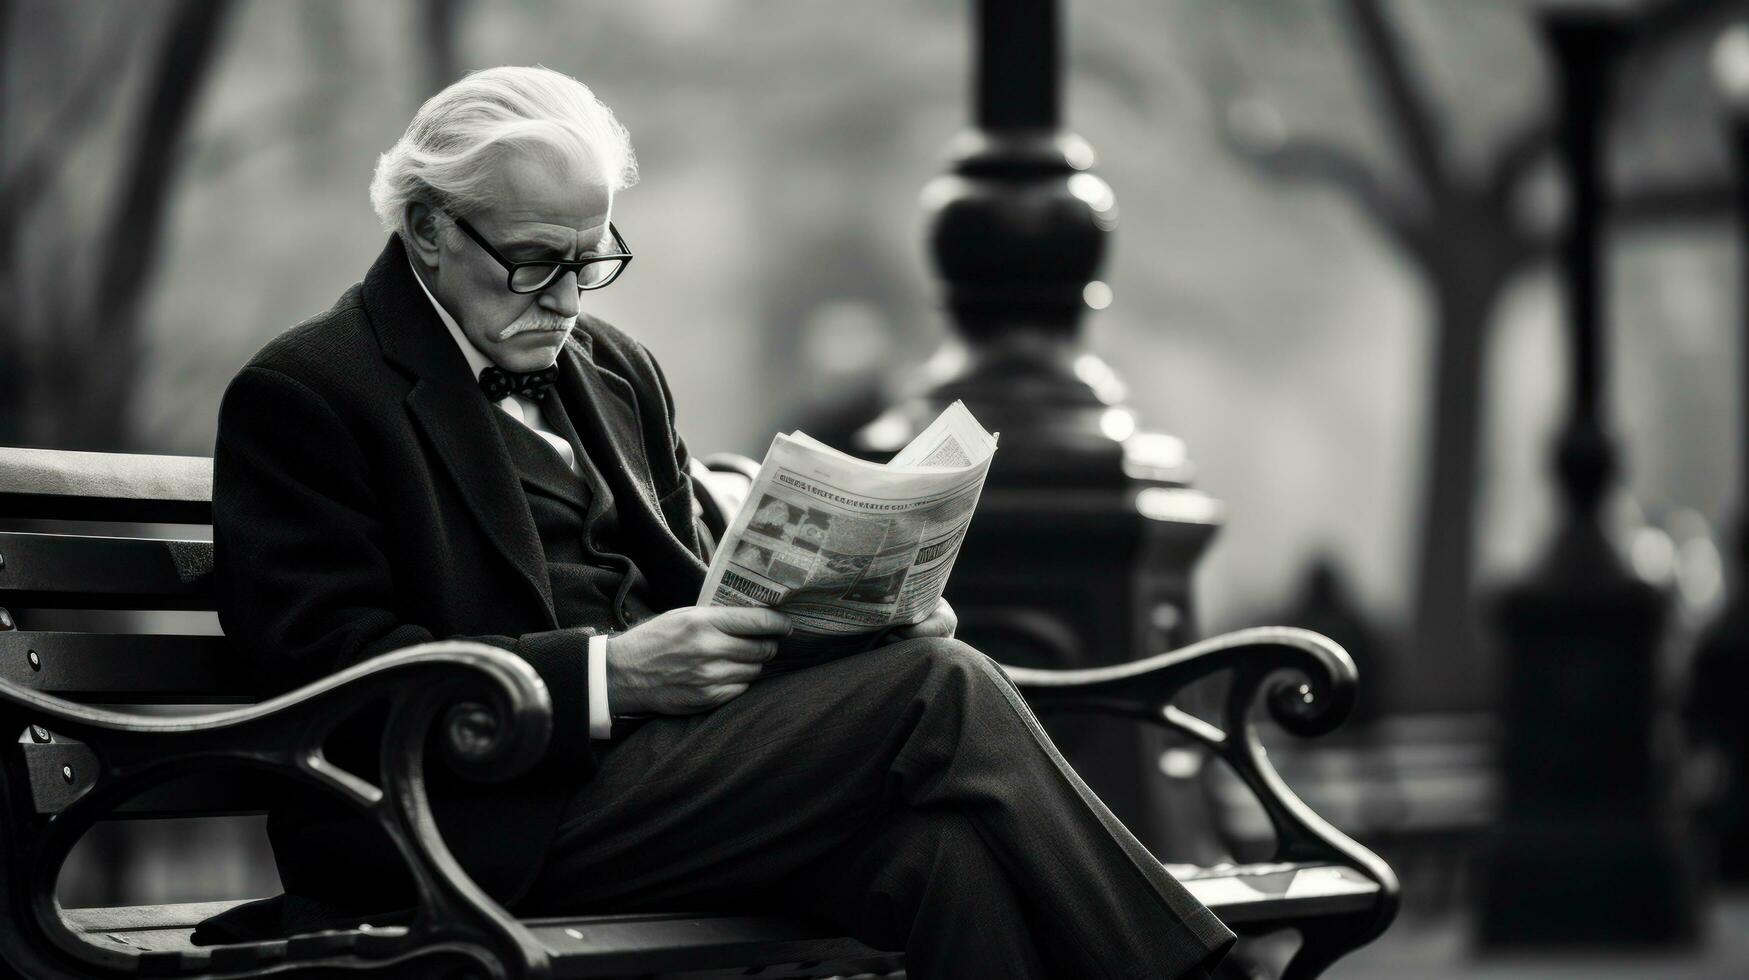 homme en train de lire journal sur une parc banc photo